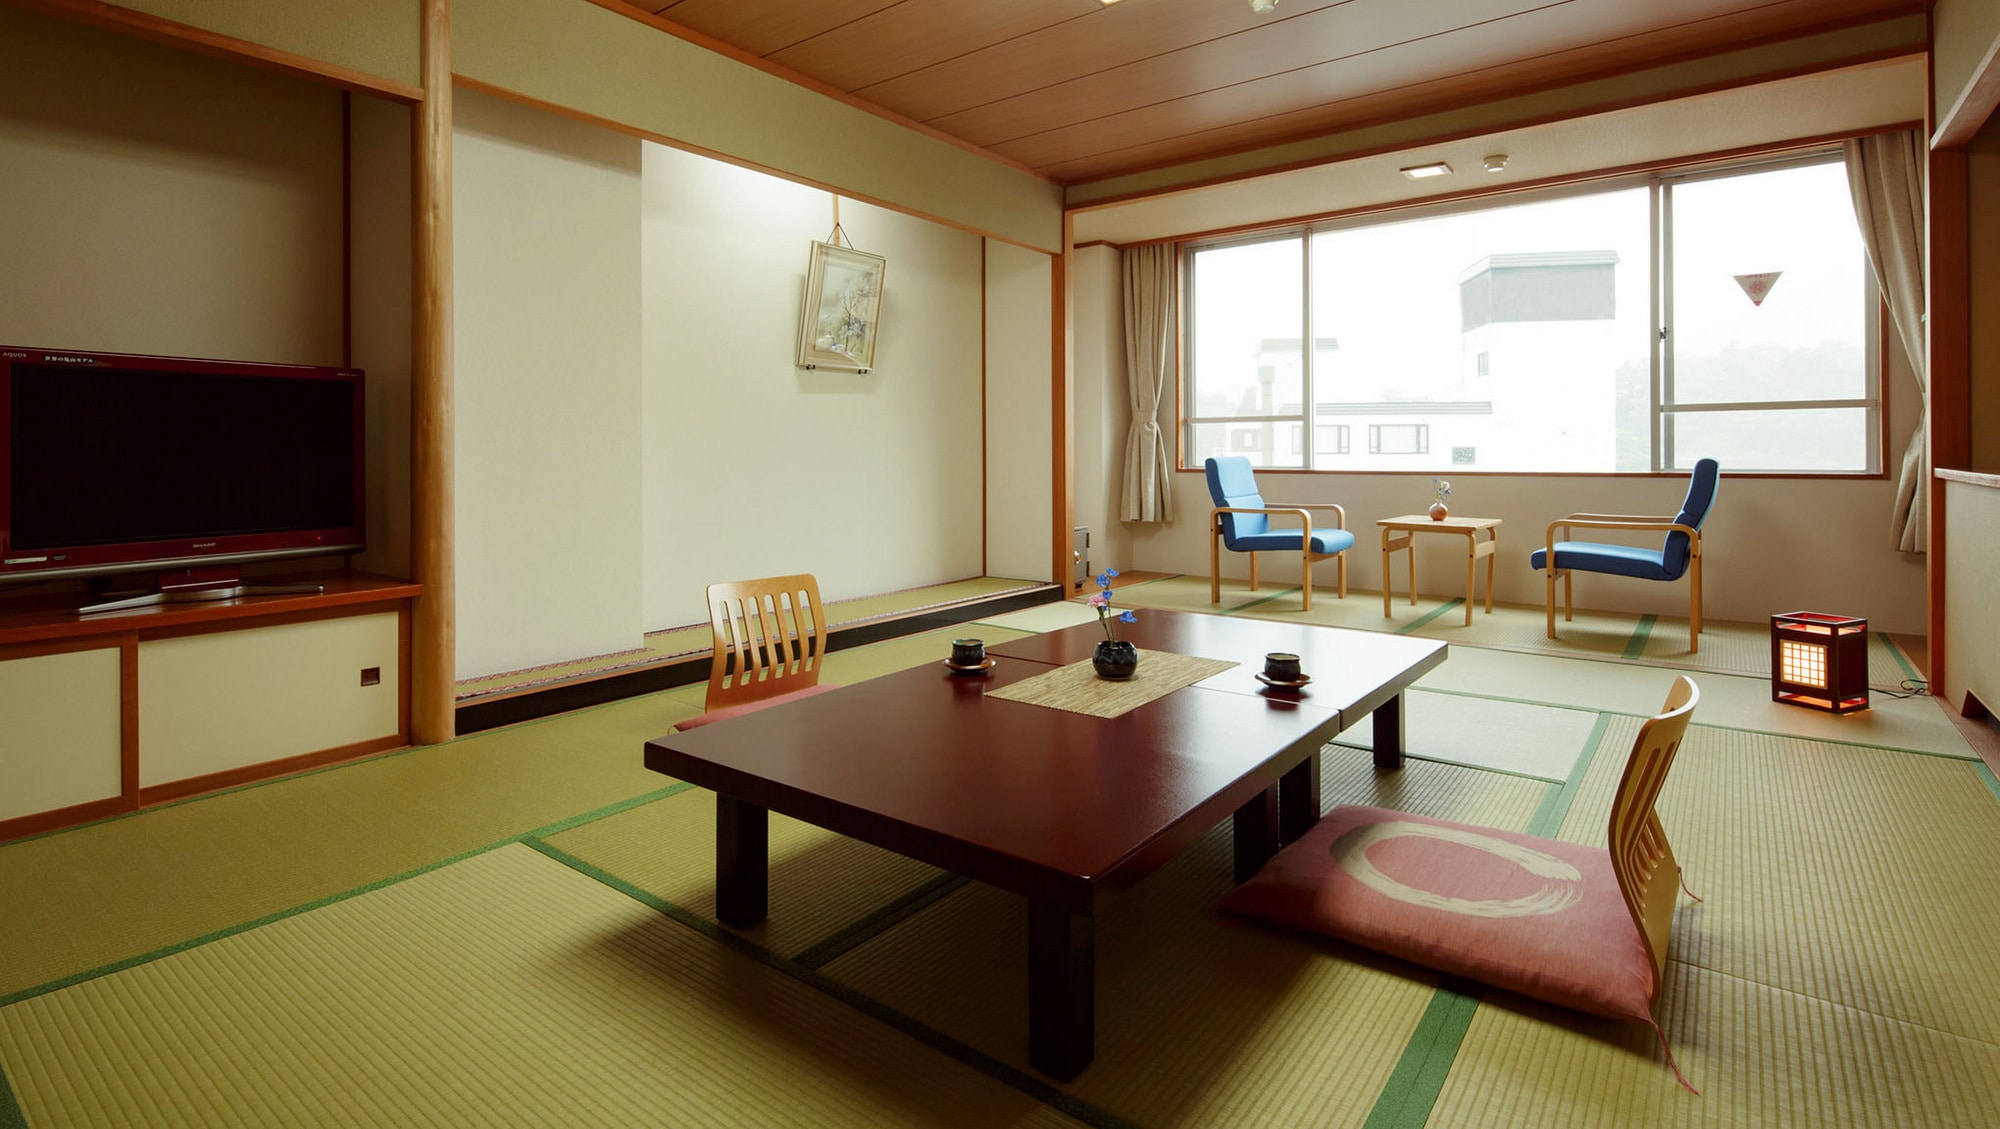 [ตัวอย่างห้องพัก / ห้องสไตล์ญี่ปุ่น 12 เสื่อทาทามิ] คุณสามารถพักผ่อนในห้องสไตล์ญี่ปุ่นที่กว้างขวาง